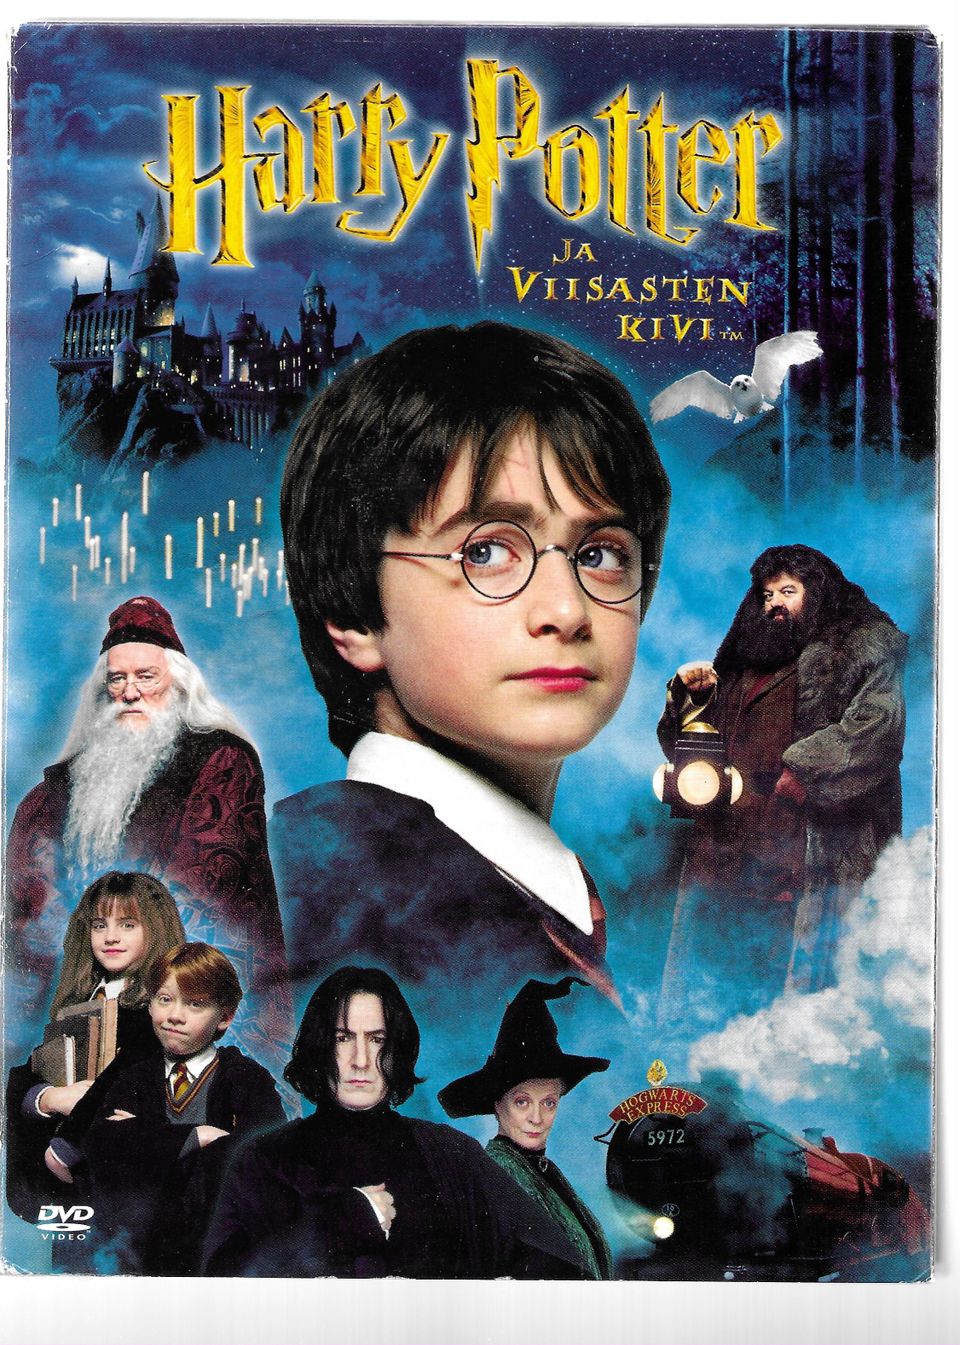 Harry Potter Viisasten Kivi 2002 tupla